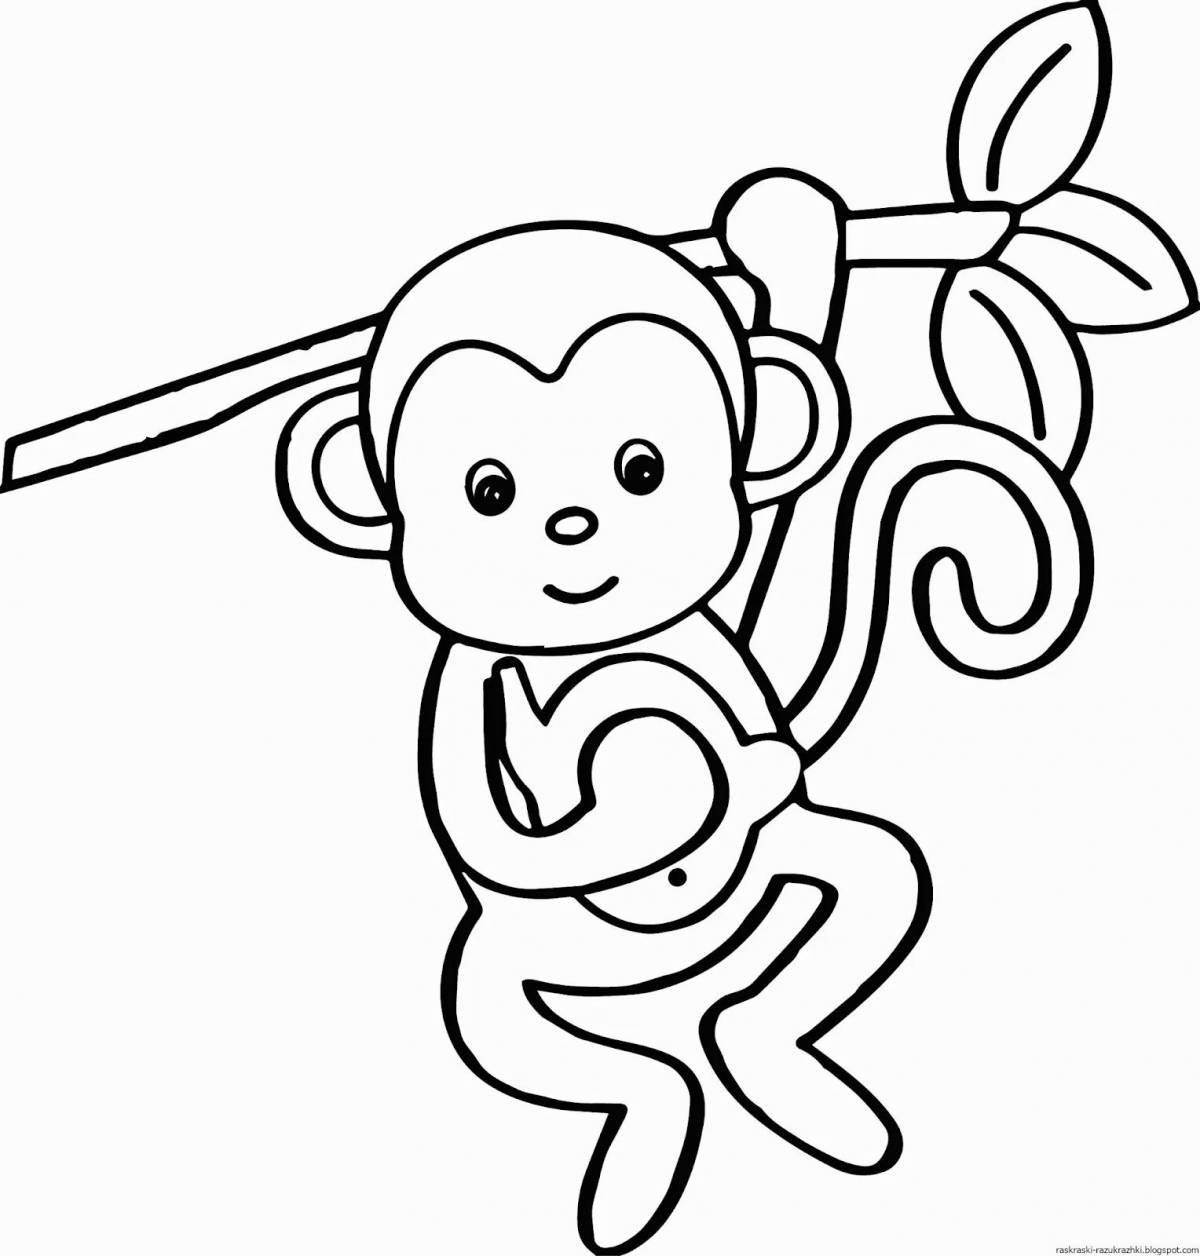 Baby monkey #12